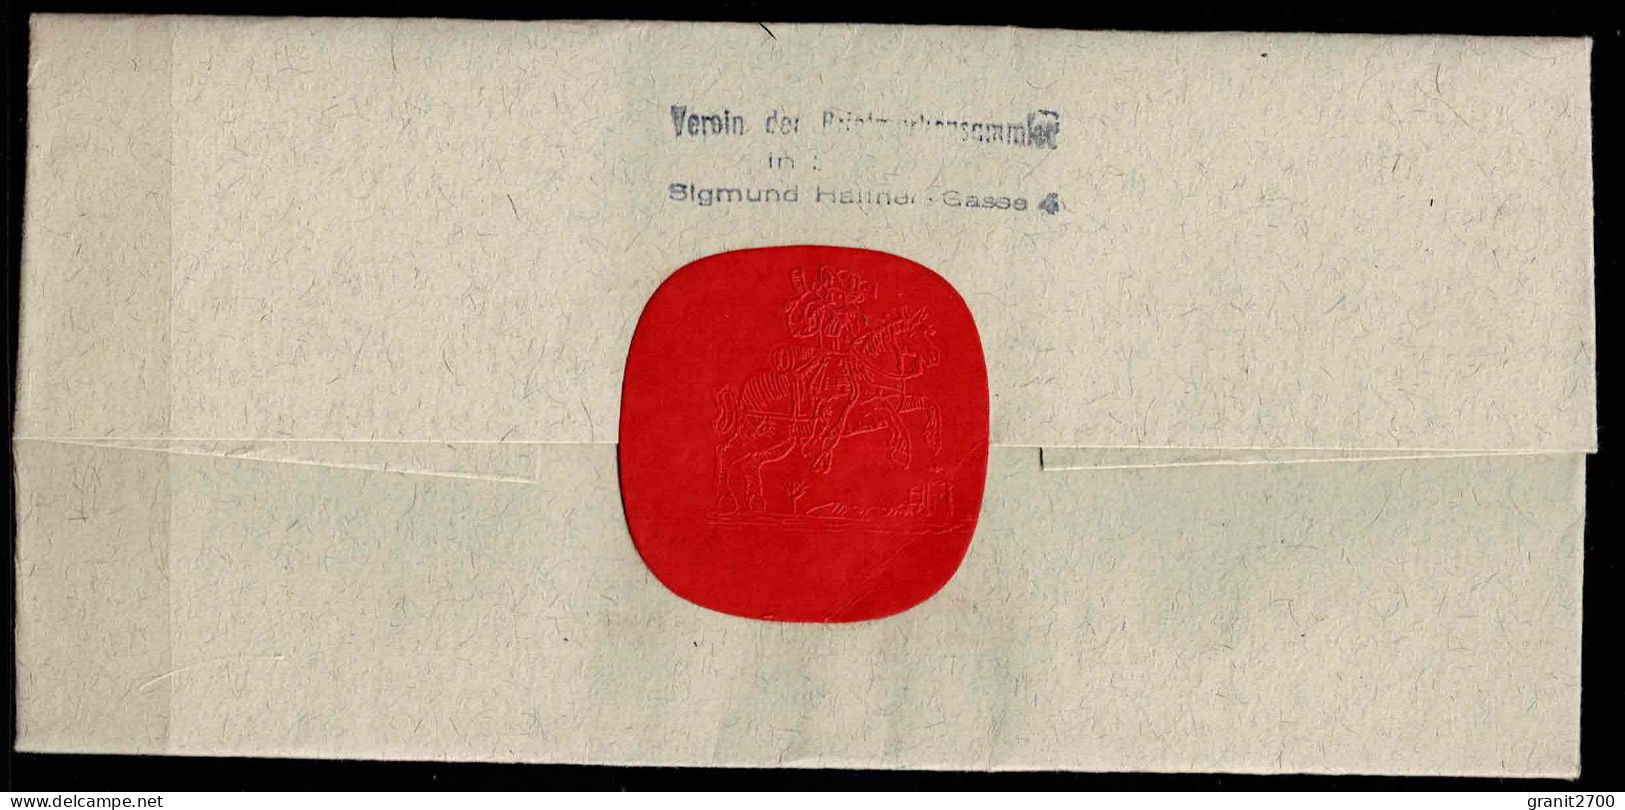 Brief Mit Stempel 50 Jahre Verein Der Briefmarkensammler - Jubiläumsausstellung Salzburg - Postreiter Vom 3.6.1963 - Covers & Documents